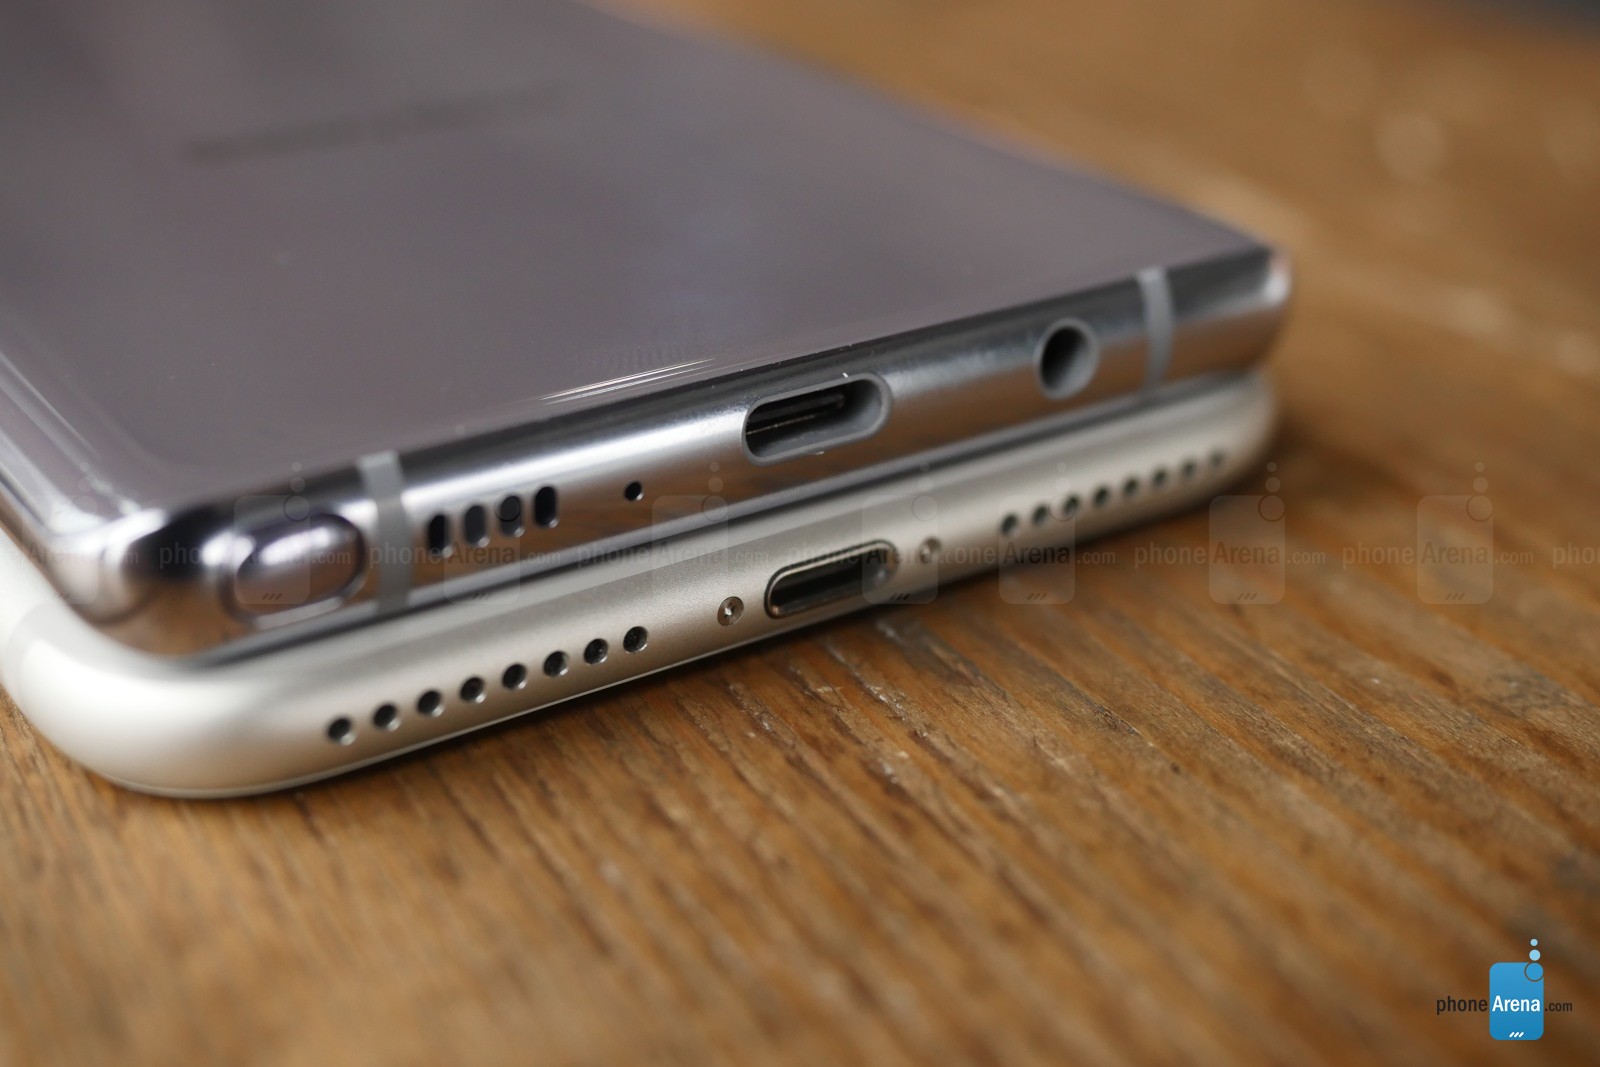 Samsung Galaxy Note 8 Vergleich iPhone 7 Plus 4